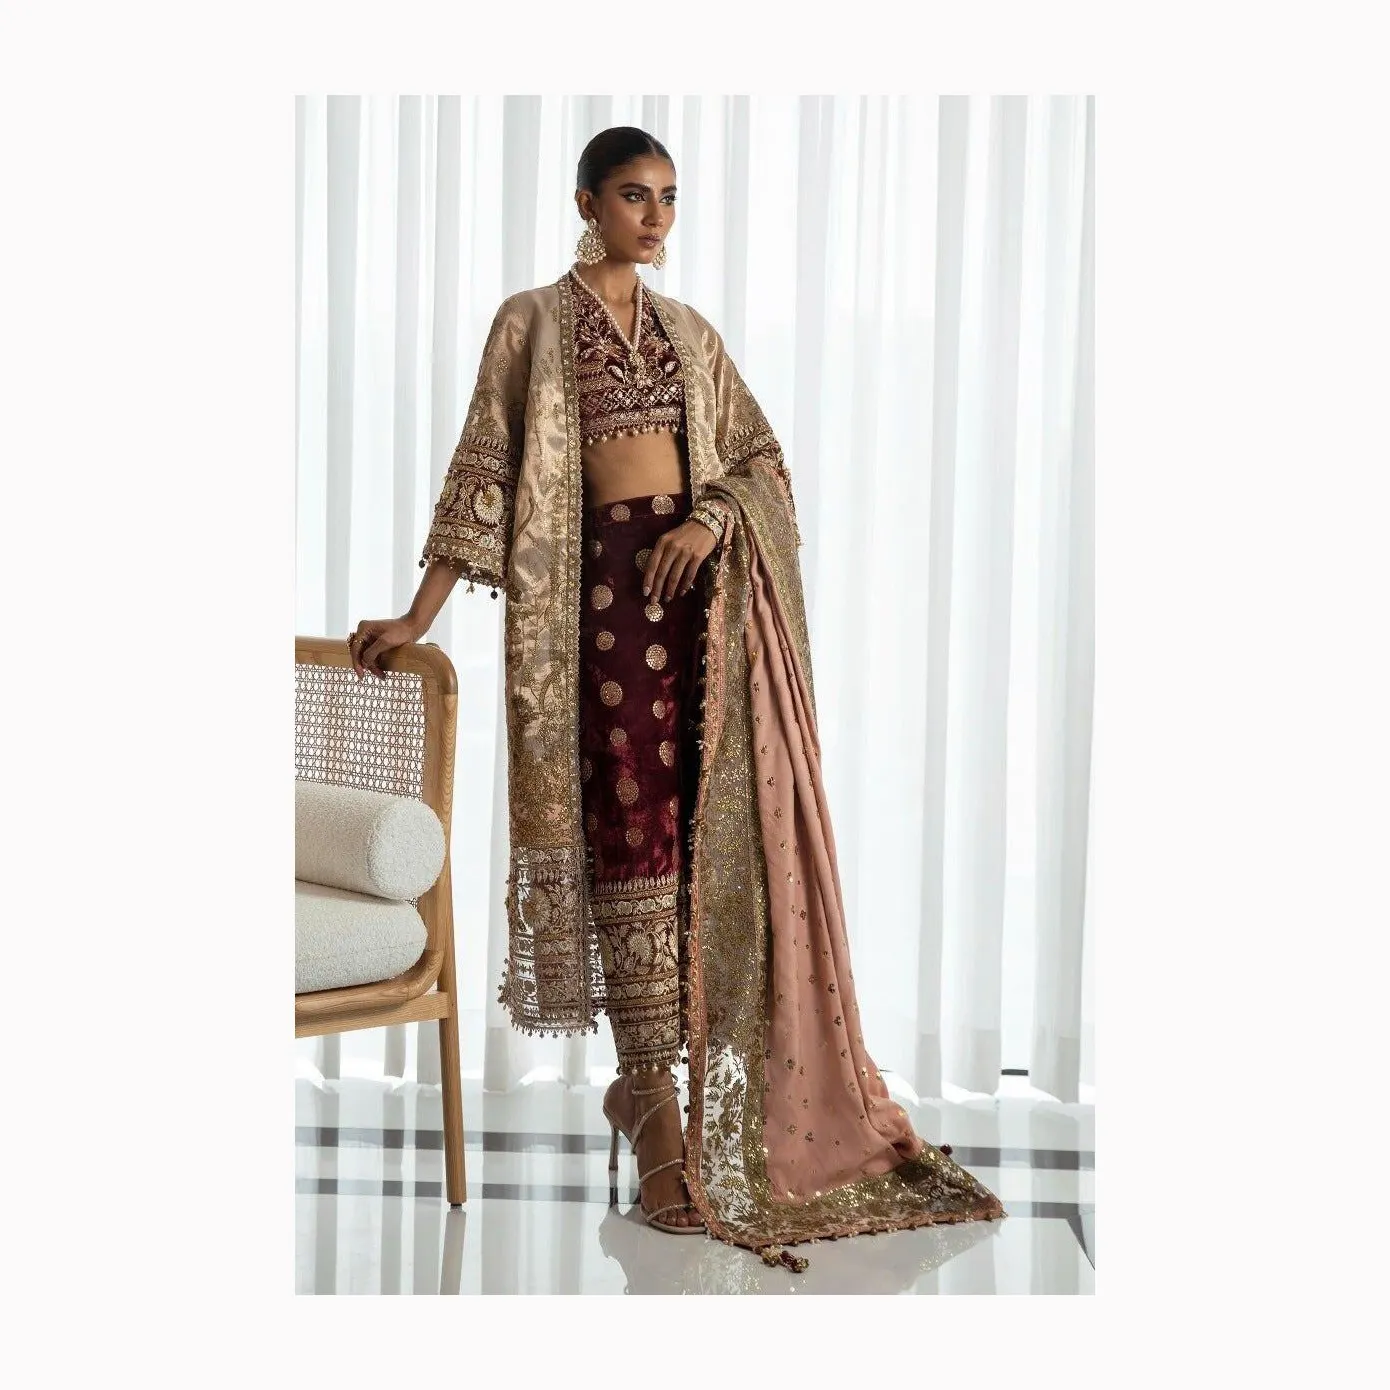 하이 퀄리티 레이스 여성 패션 파키스탄 신부 드레스 신부 드레스 웨딩 파키스탄 웨딩 드레스